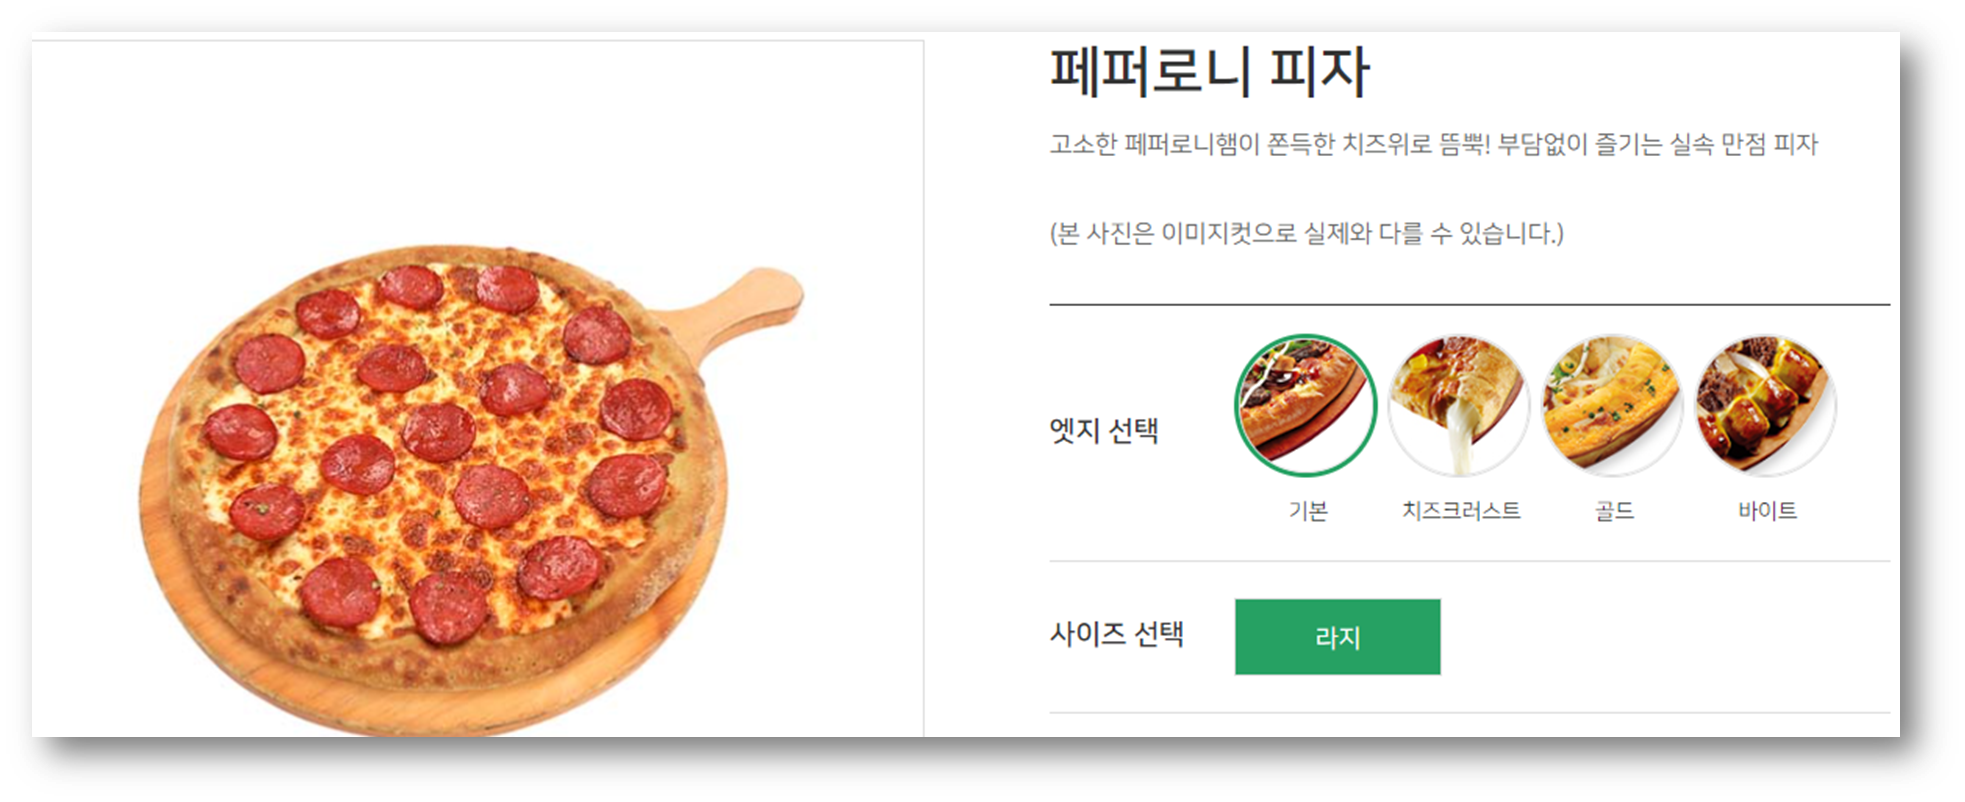 피자마루 메뉴 추천 및 할인 참고사진3